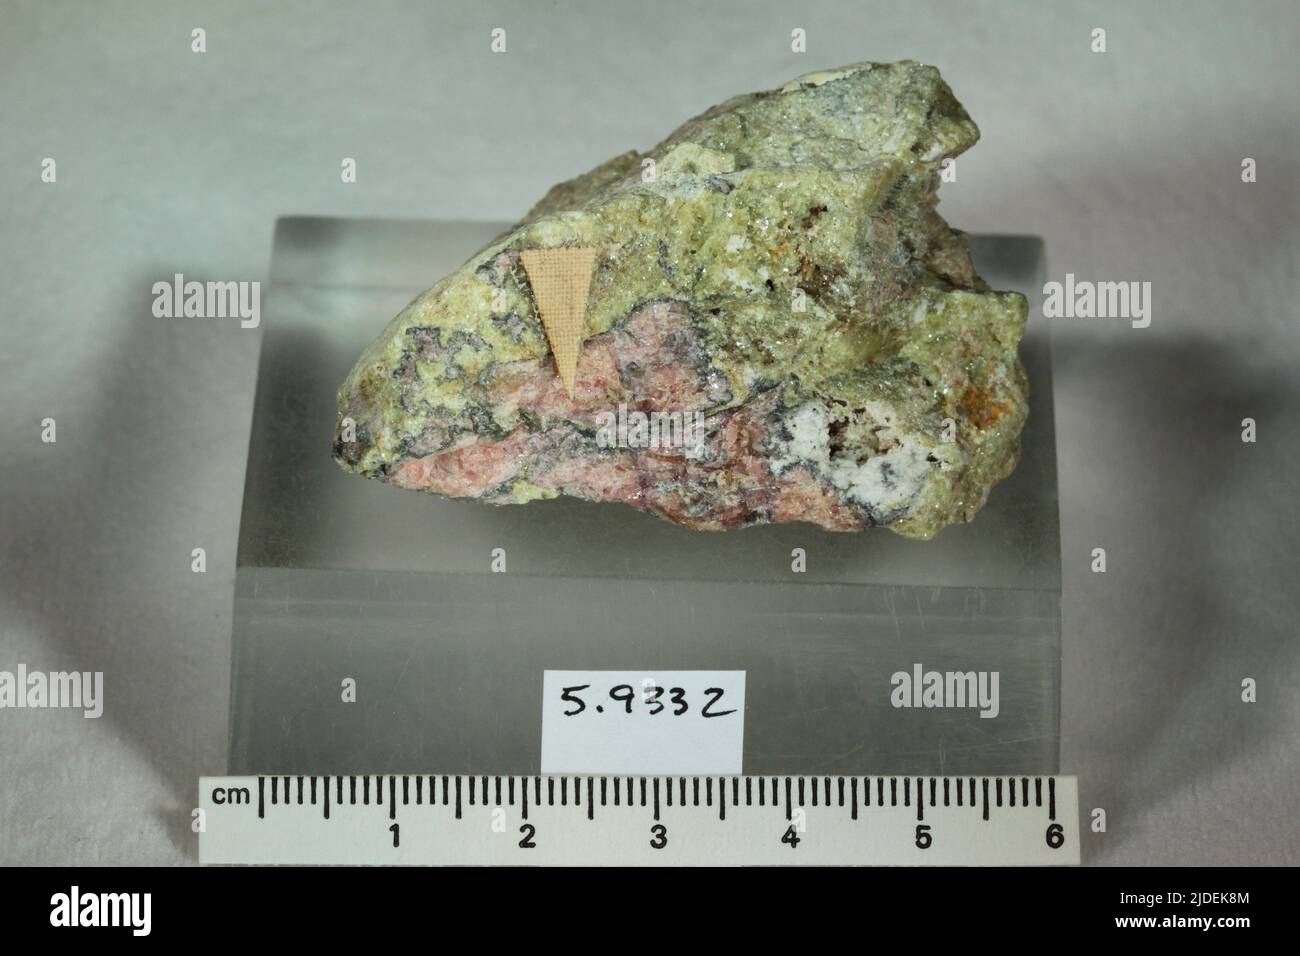 Vayrynenite. minerals. Europe; Finland; Orivesi, Eräjärvi; Viitaniemi pegmatite Stock Photo